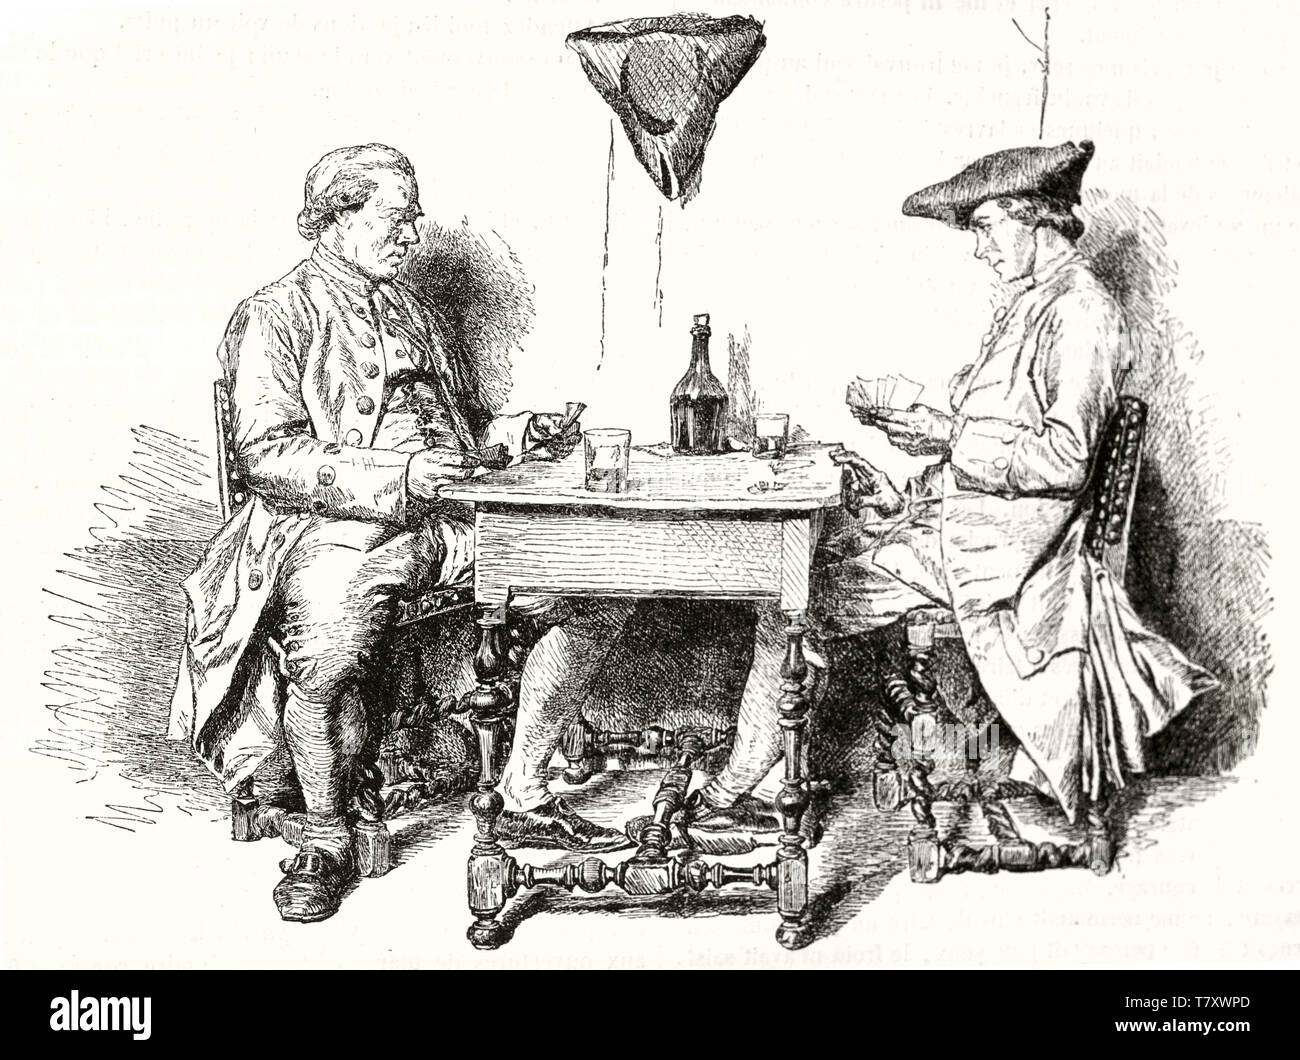 Deux personnes élégante médiévale carte à jouer sur une petite table et de boire du vin. Vieille illustration gris représentant deux joueurs de cartes. Après l'Messoinier publ. sur Magasin pittoresque Paris 1848 Banque D'Images